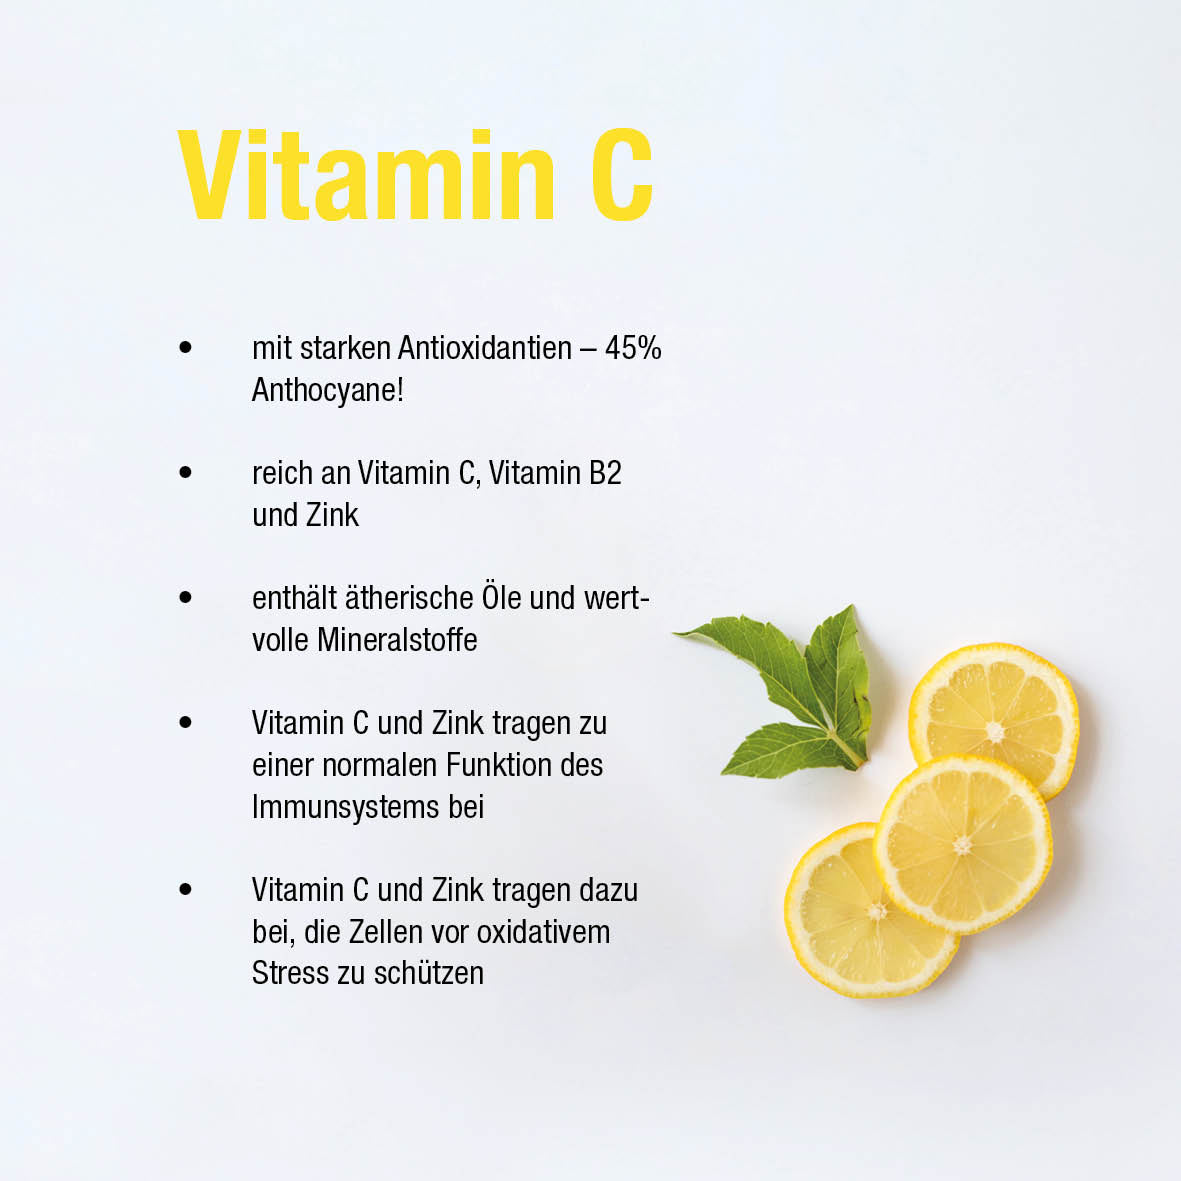 Immun Boost - mit Holunder Extrakt, Vitamin C und Zink- 60 vegane Kapseln